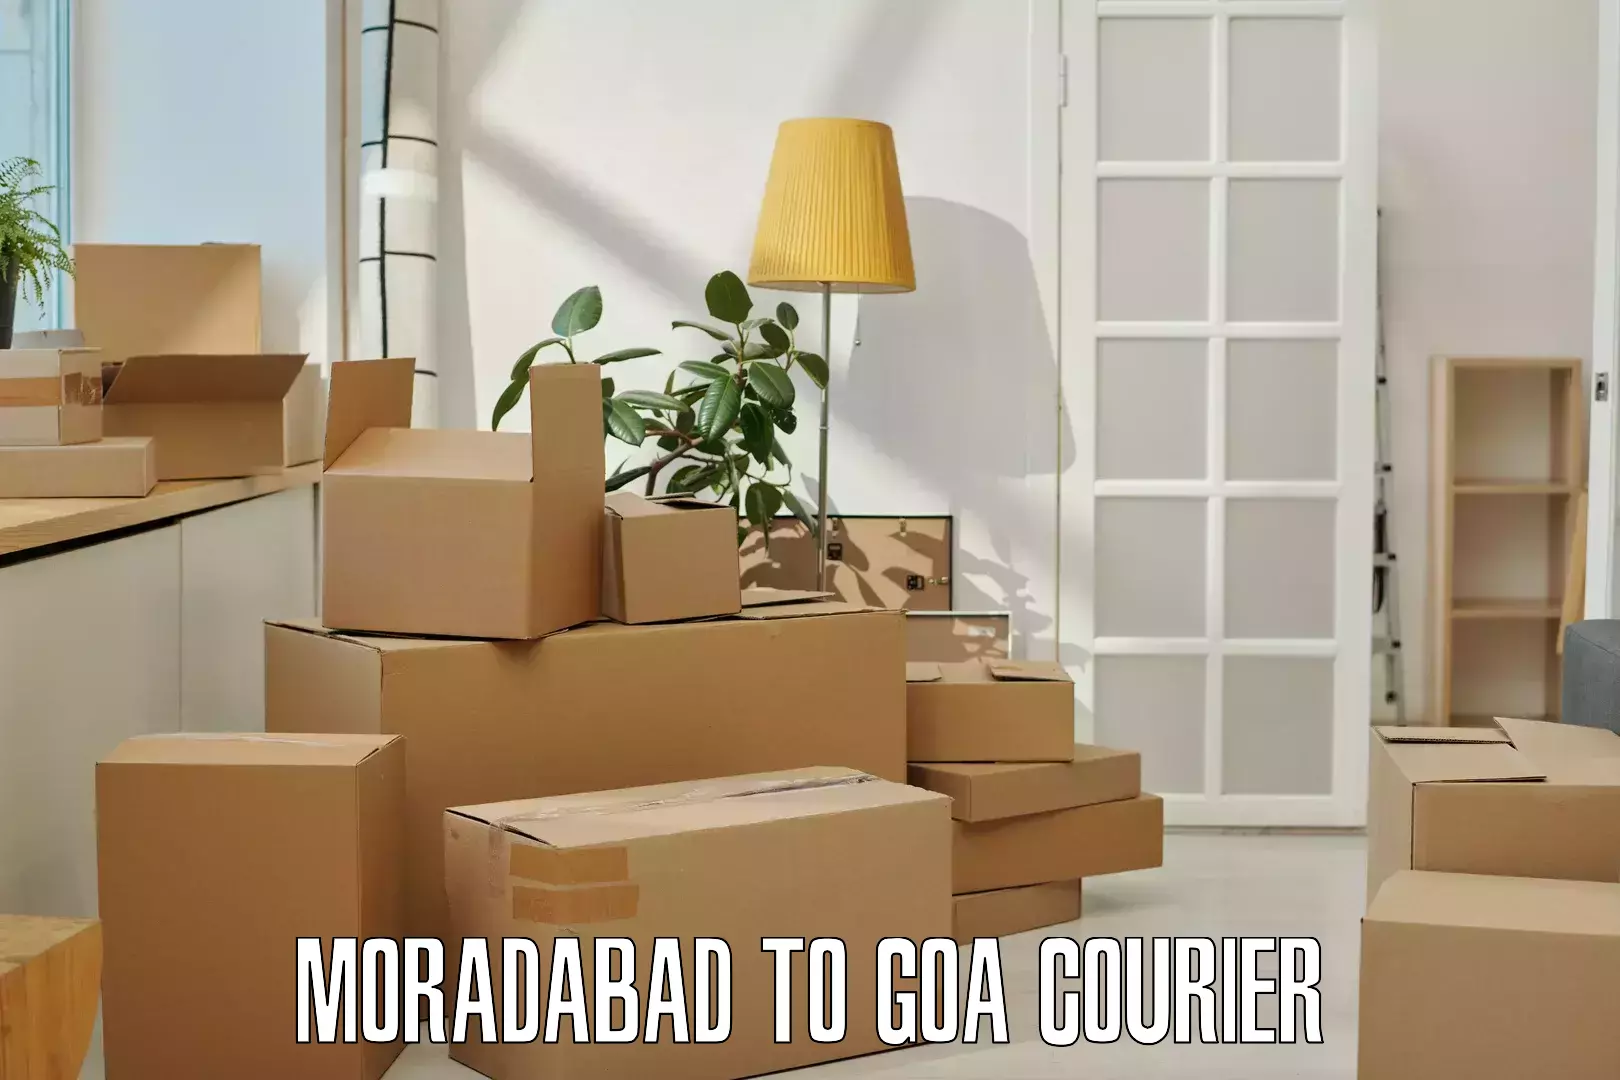 Urban courier service Moradabad to Mormugao Port